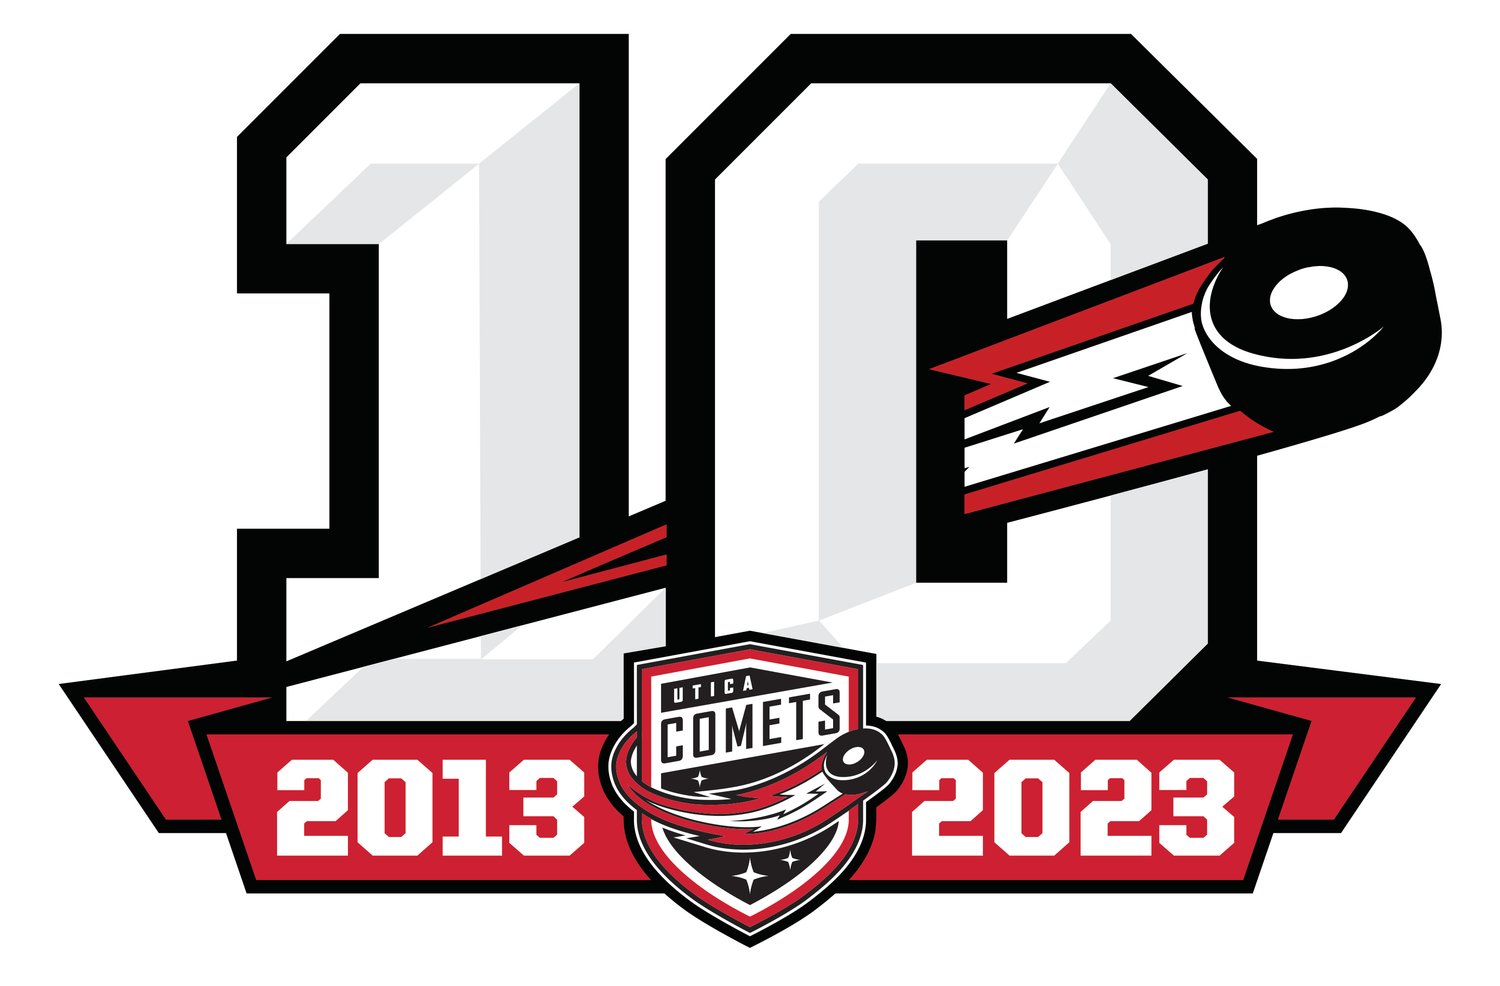 Utica Comets 10th anniversary logo